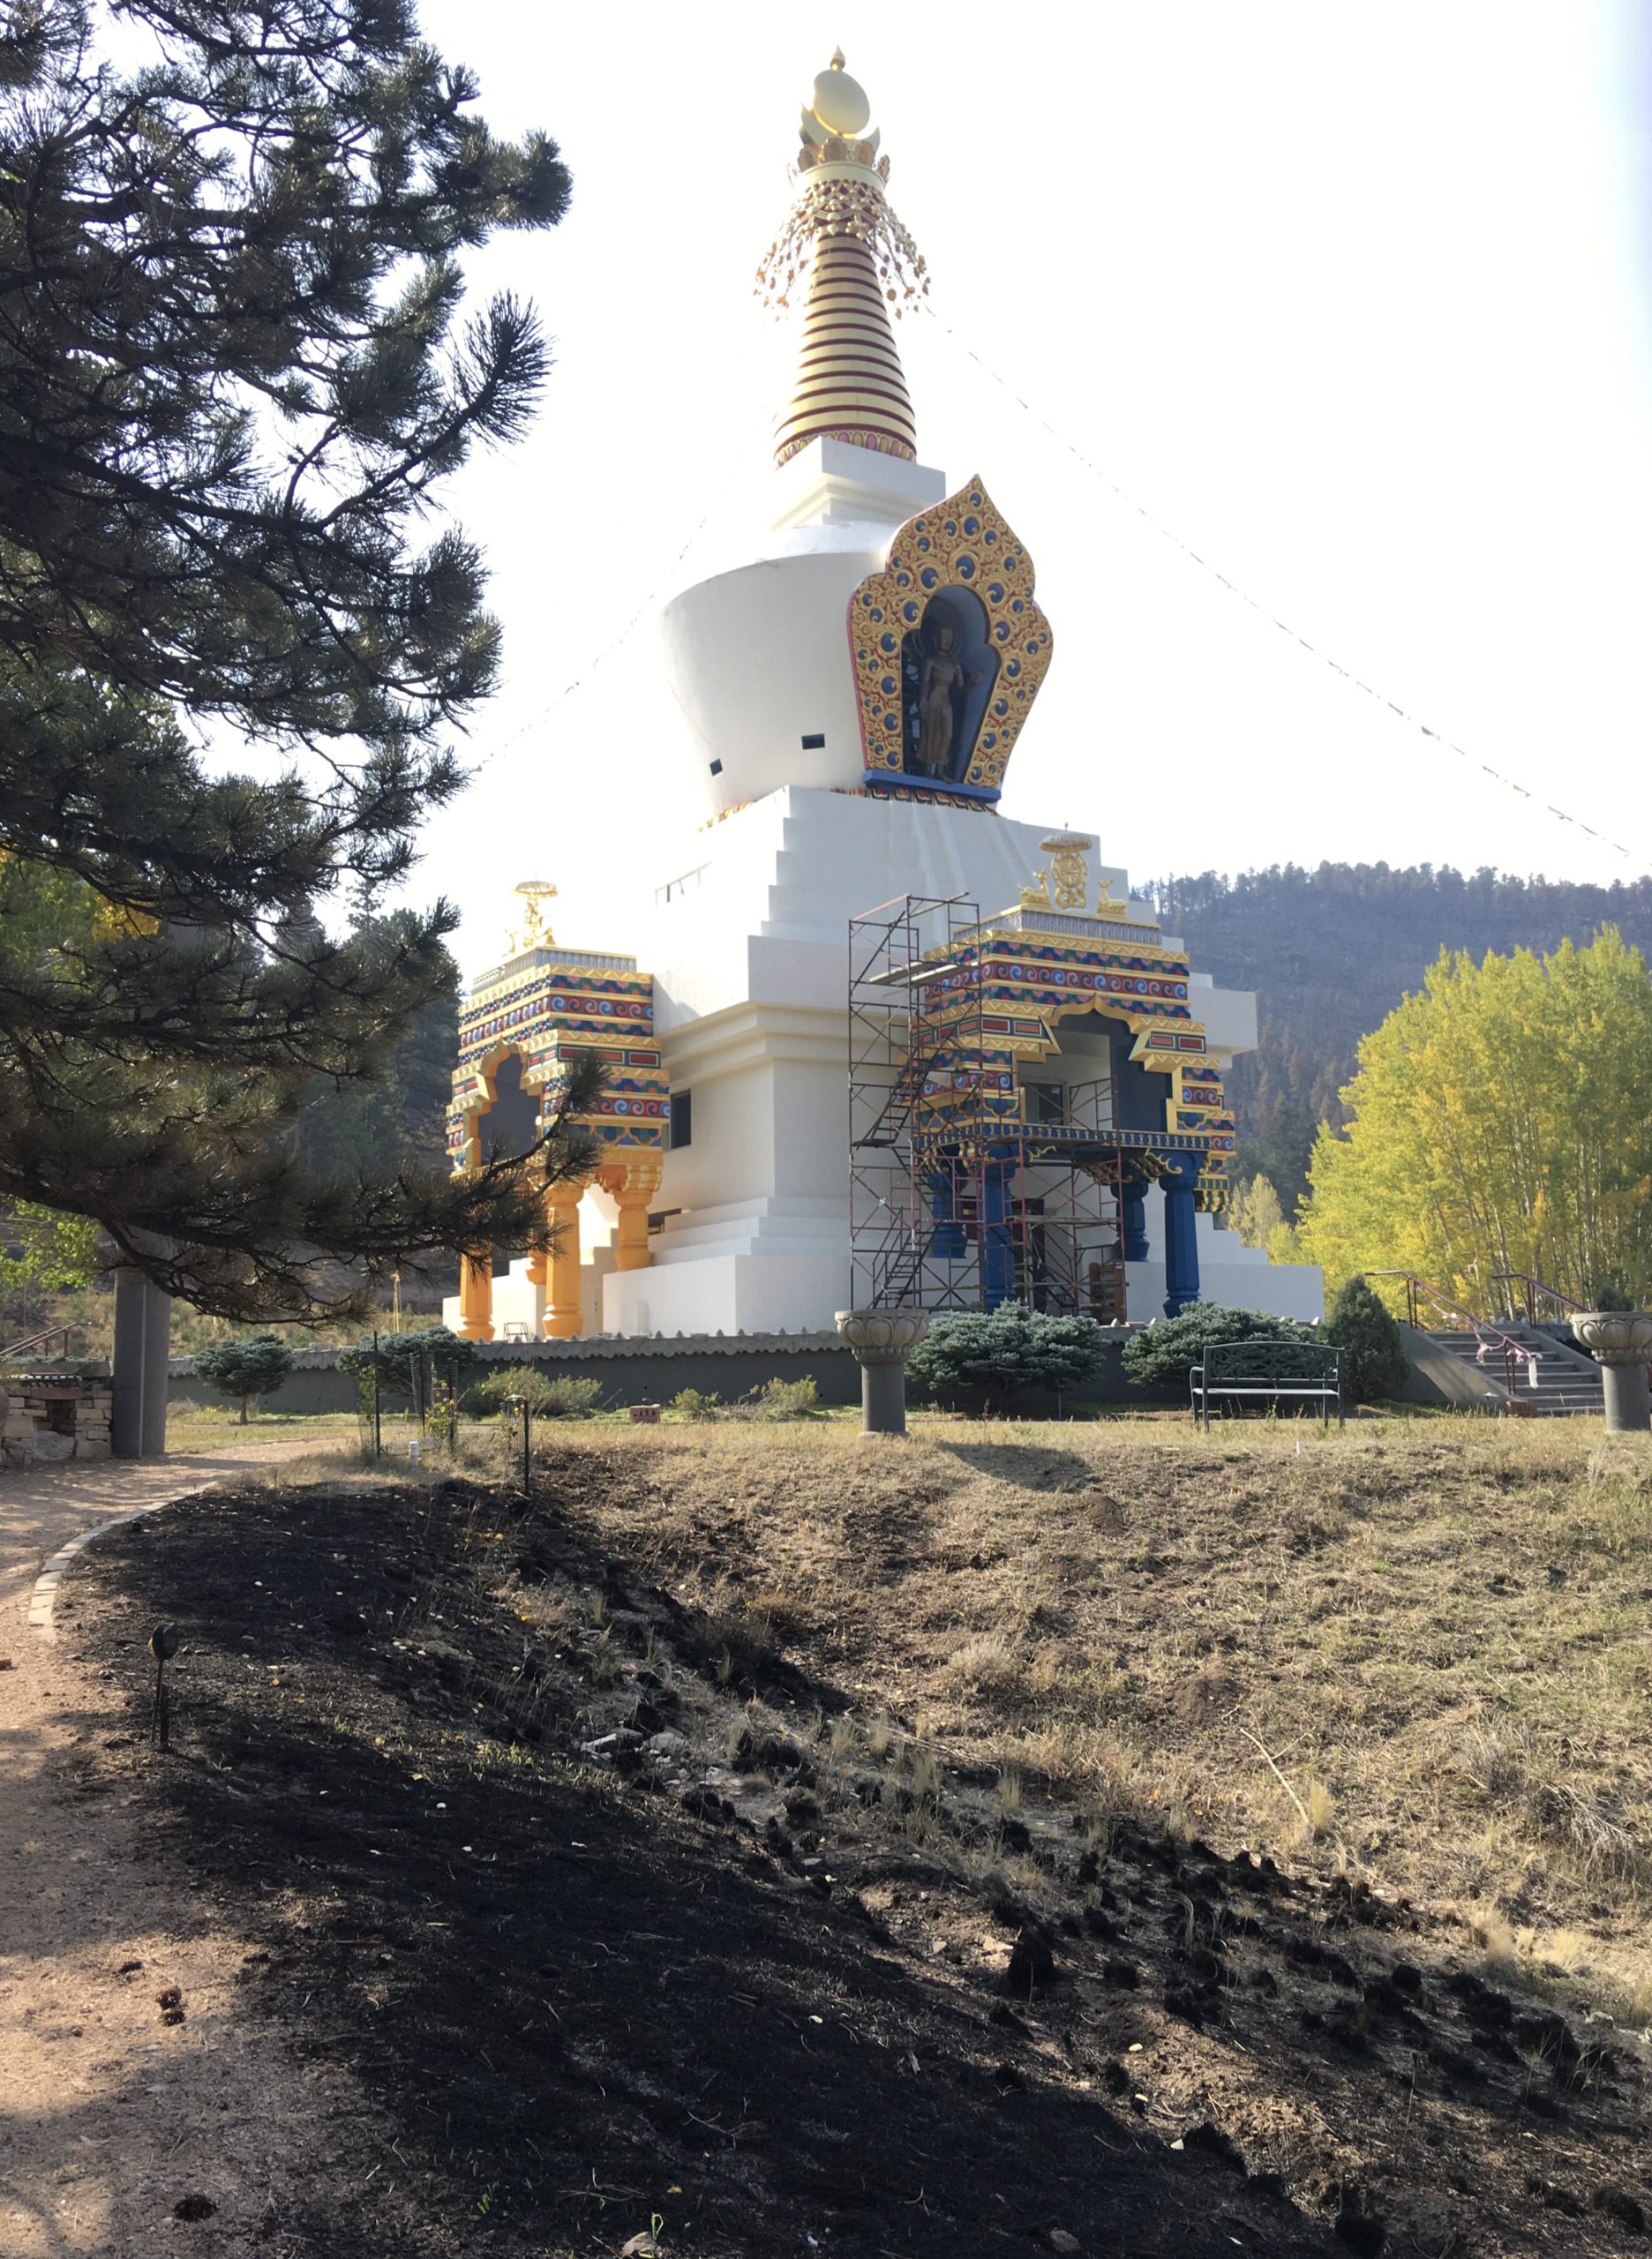 4. The Stupa